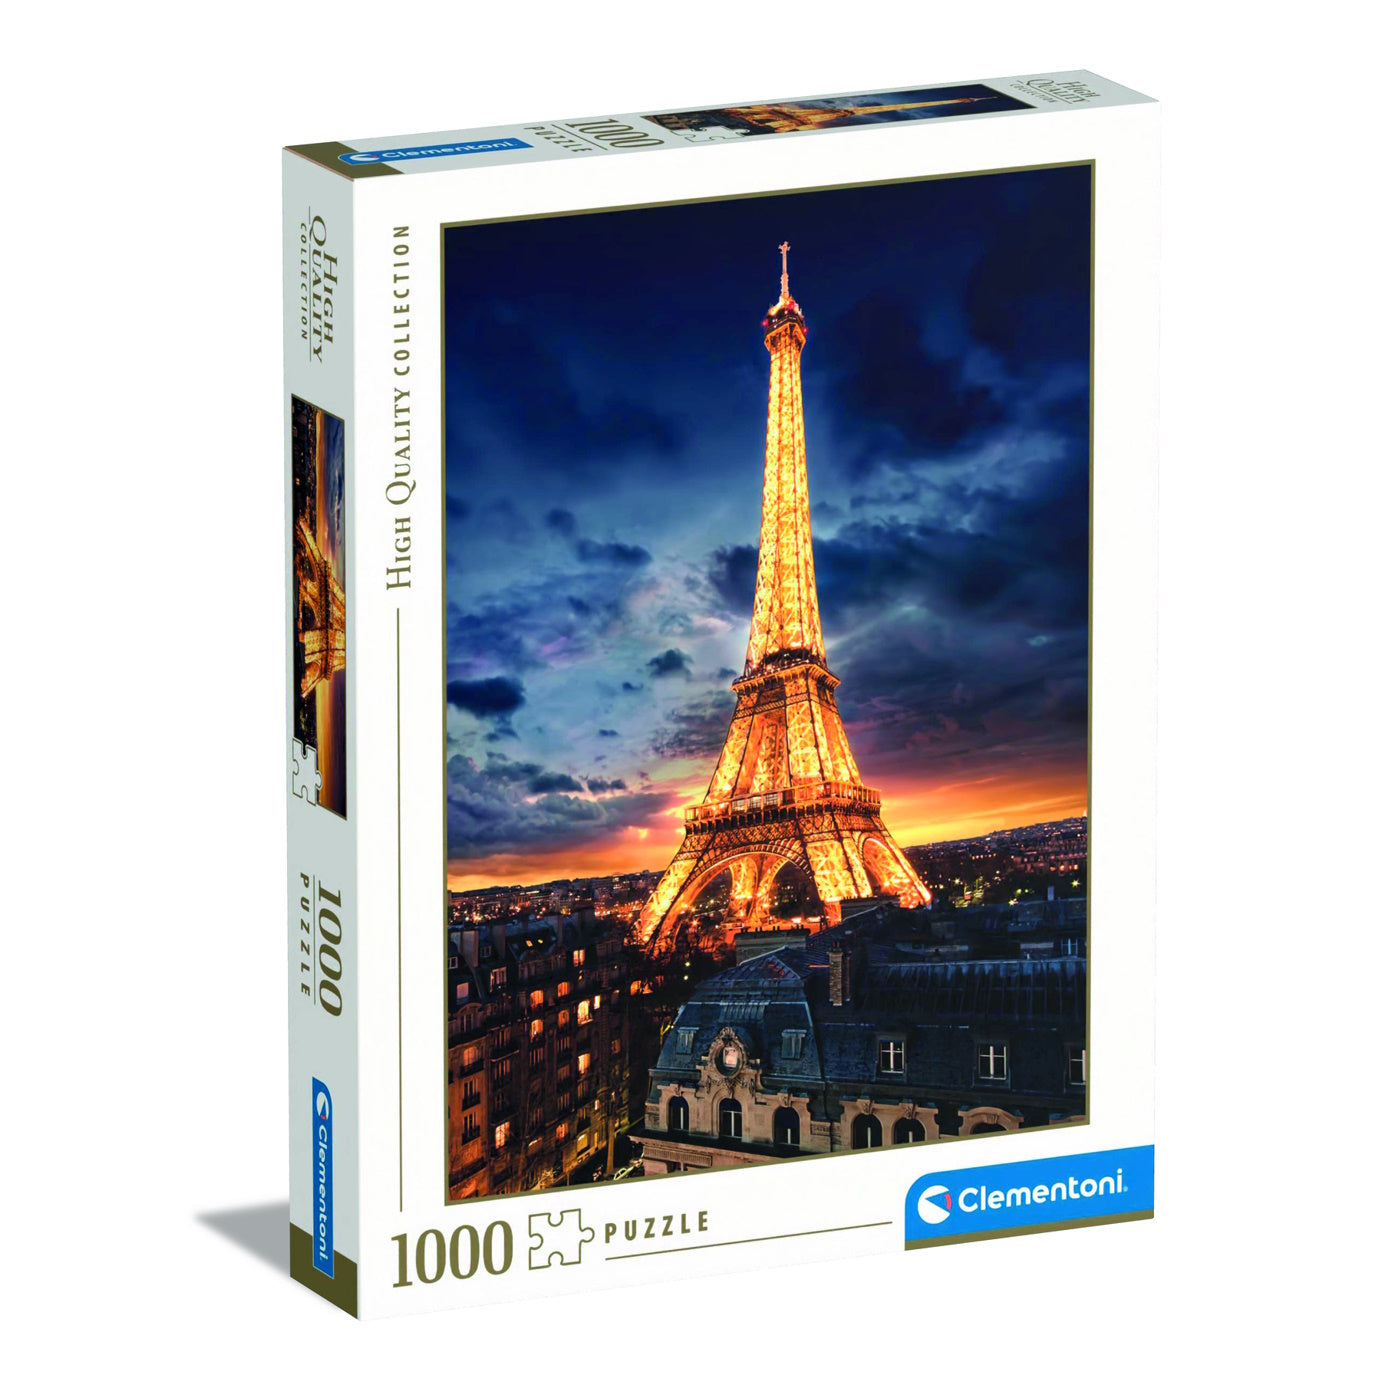 Clementoni 1000 Piece Jigsaw Puzzle - Tour Eiffel